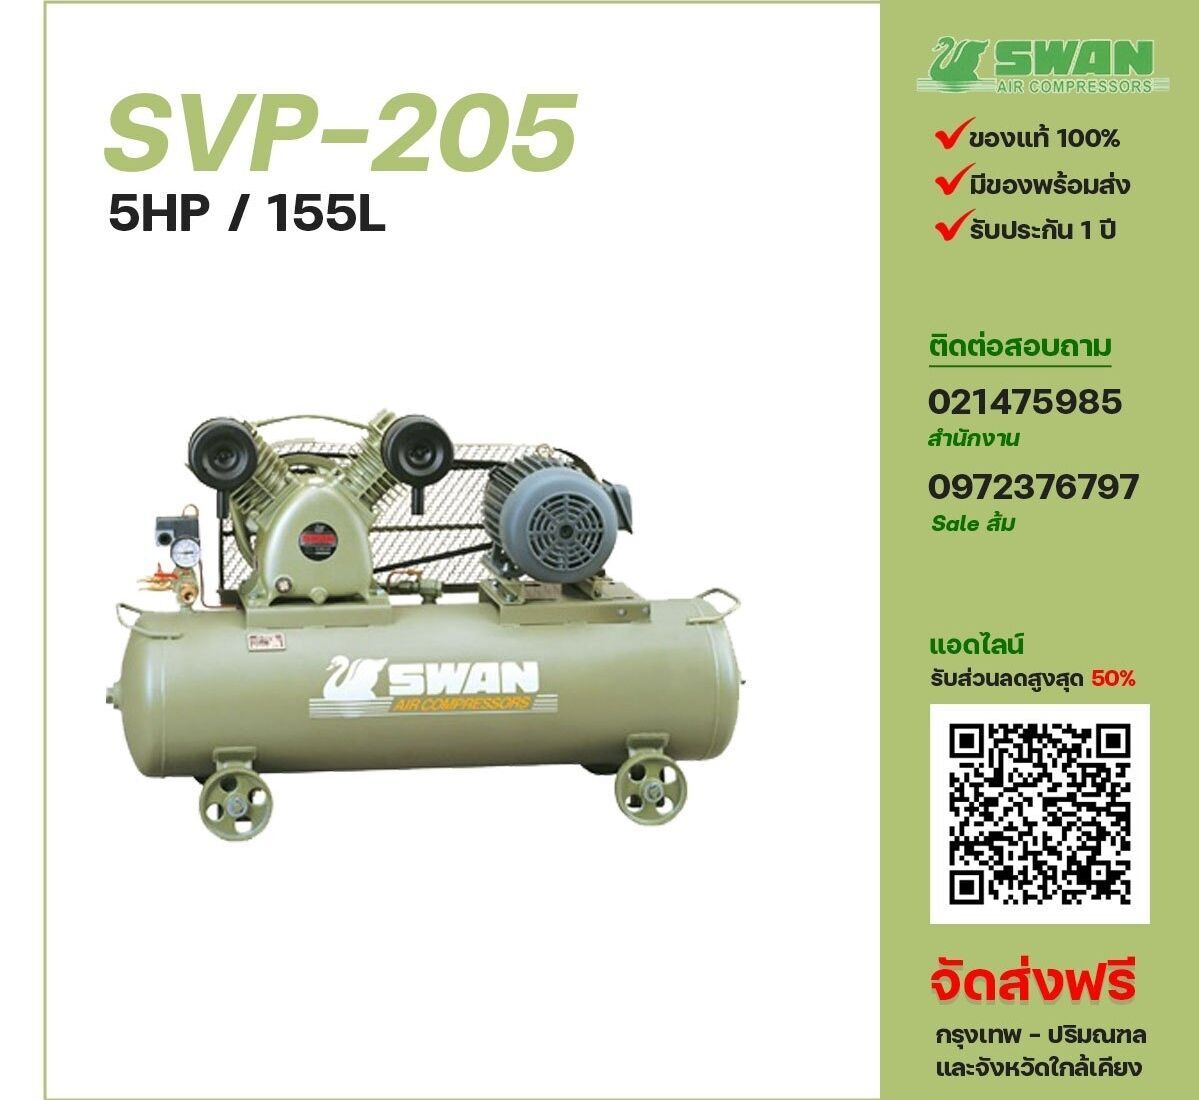 ปั๊มลมสวอน SWAN SVP-205 220V/380V ปั๊มลมลูกสูบ ขนาด 2 สูบ 5 แรงม้า 155 ลิตร SWAN พร้อมมอเตอร์ ไฟ 220V/380V ส่งฟรี กรุงเทพฯ-ปริมณฑล รับประกัน 1 ปี